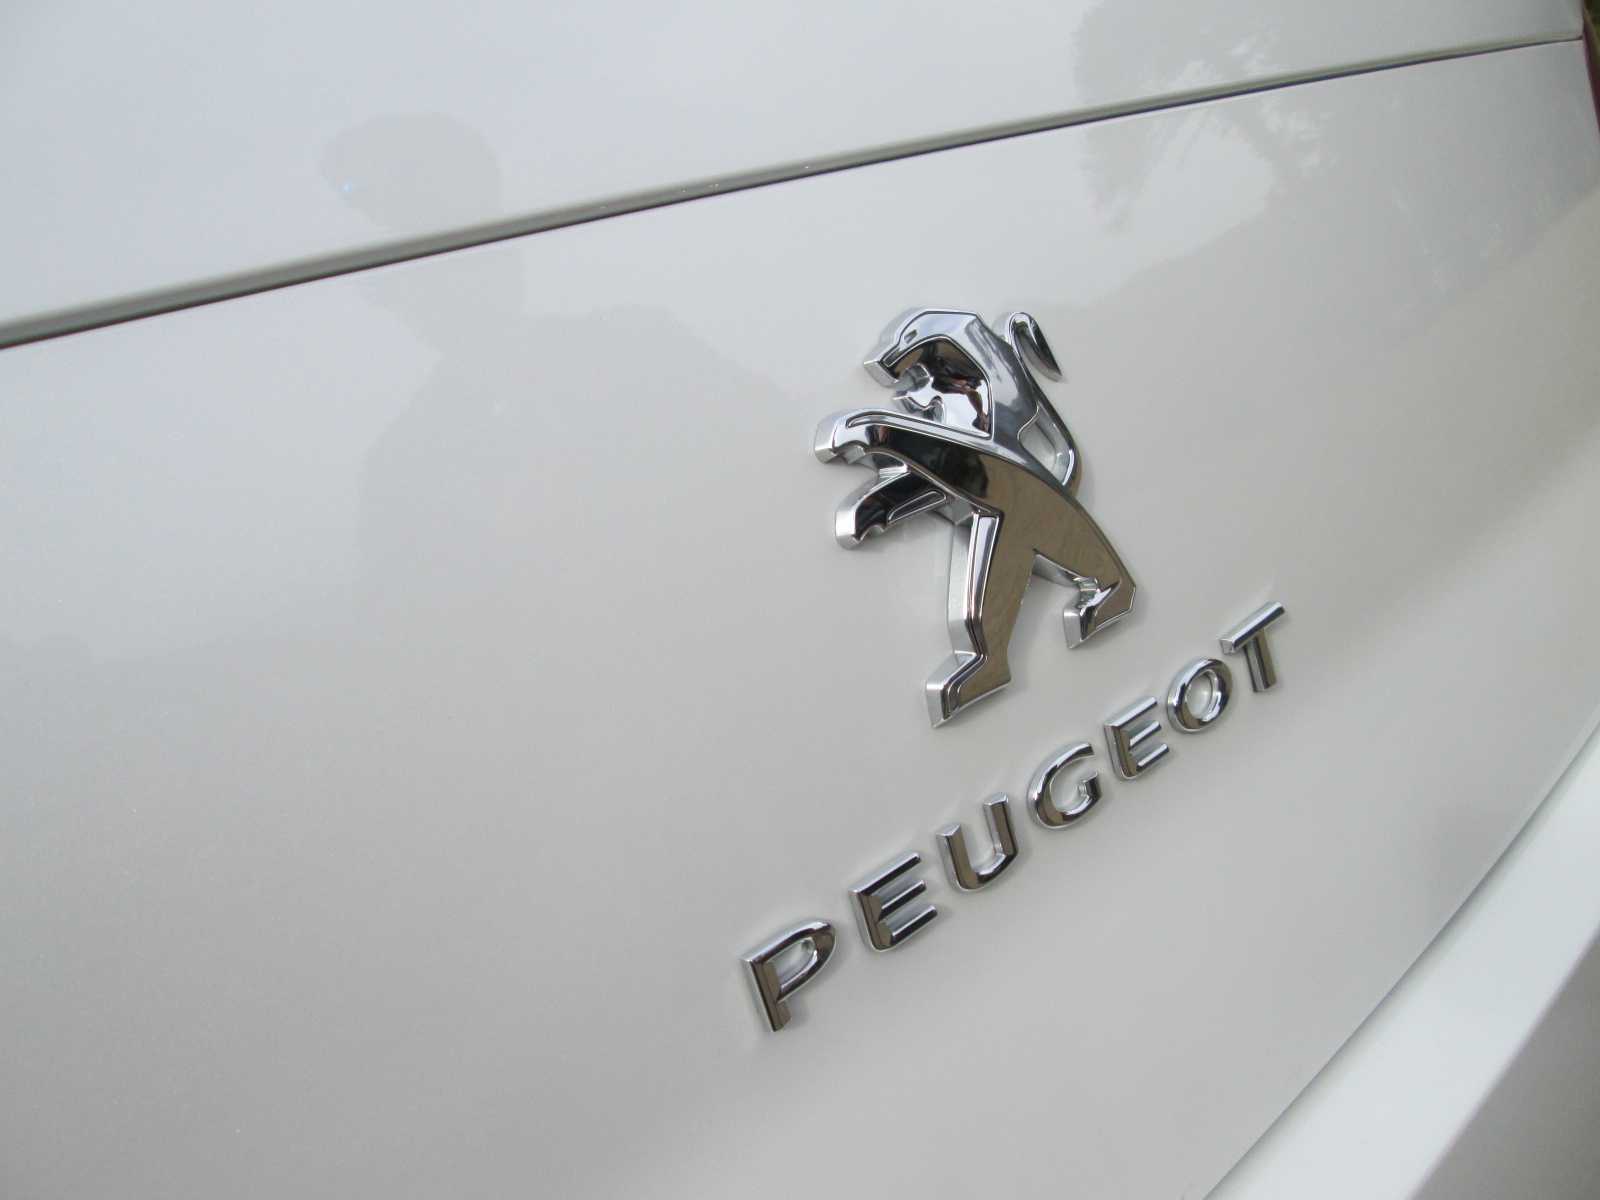 Peugeot 508 2.0L 165 CV Allure 2015 Toma de Contacto (11)